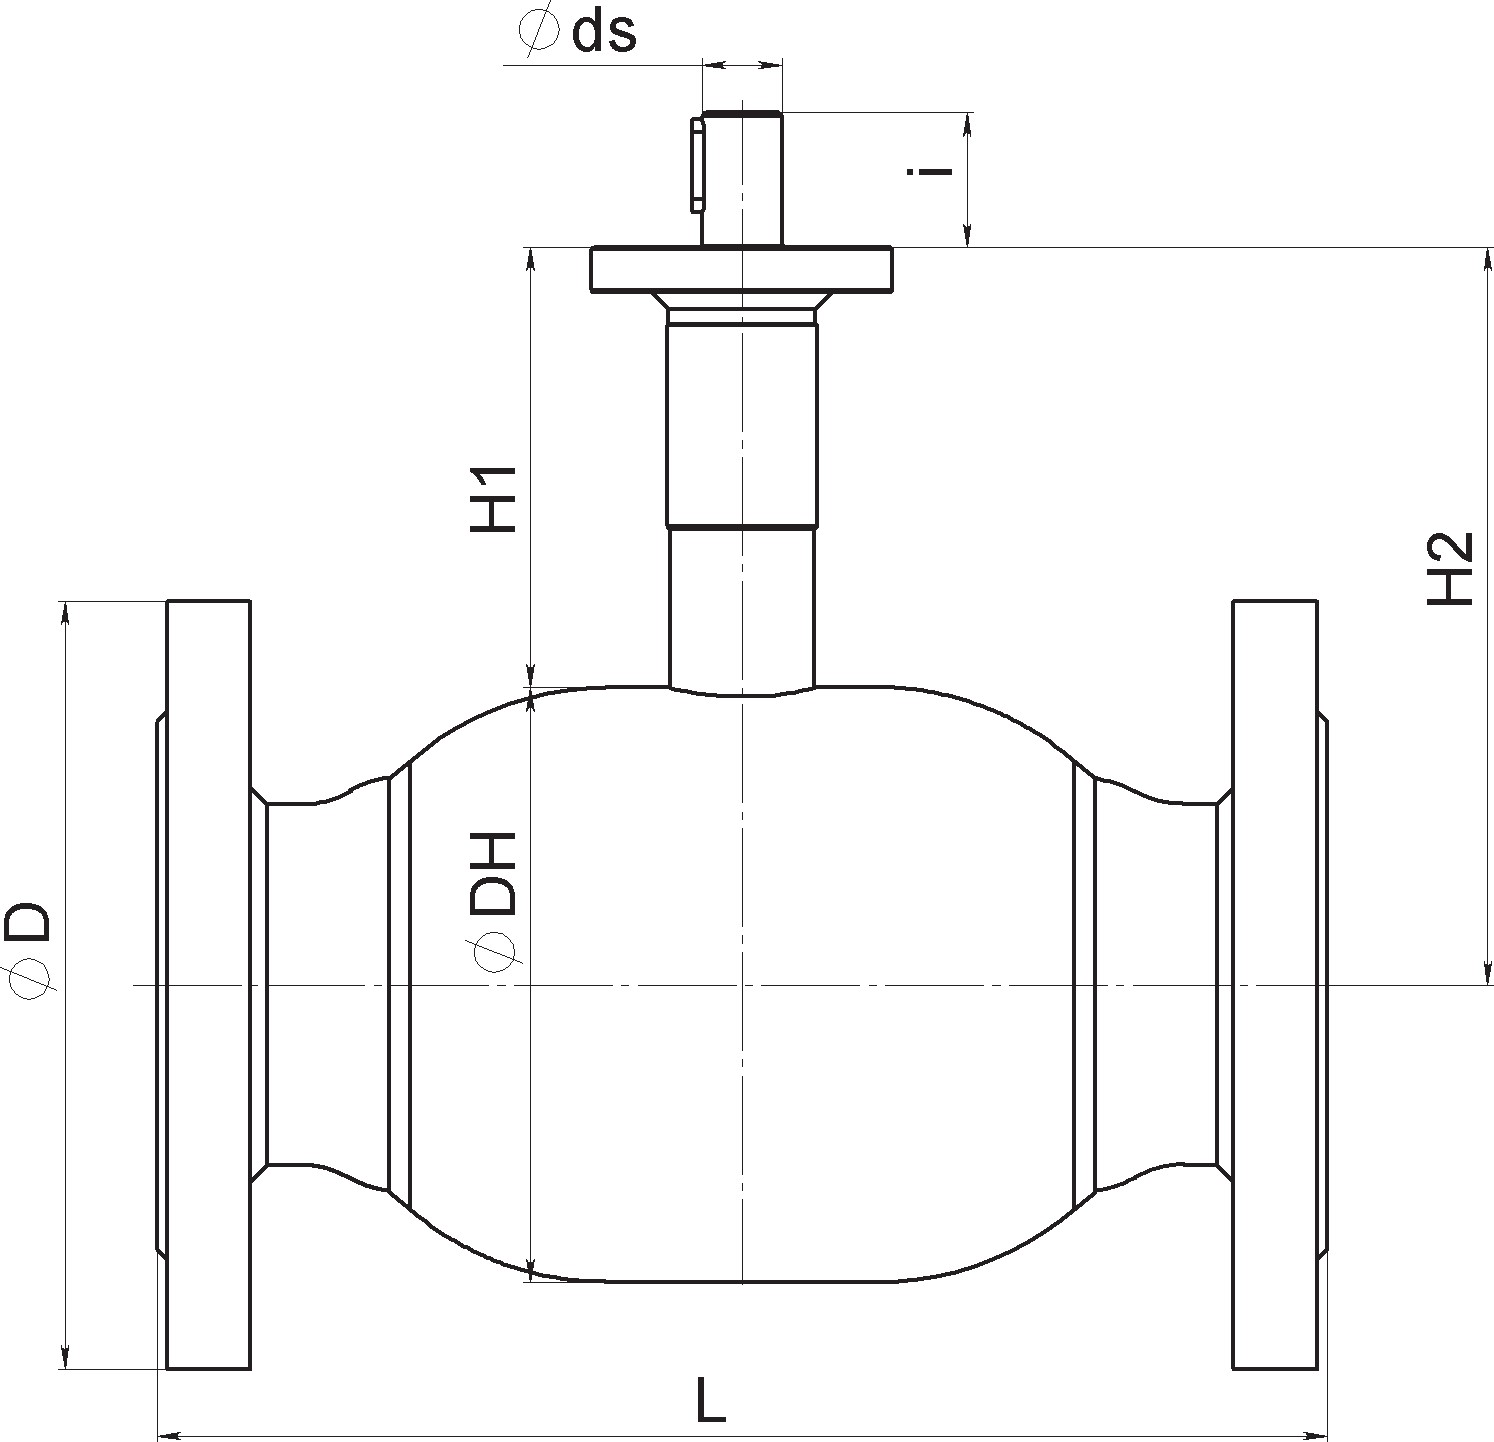 Кран шаровый Broen Ballomax-КШТ61.113.Б.16-25 Ду200 Ру25 полнопроходный с плавающим шаром, с ISO фланцем, корпус - сталь, уплотнение - EPDM, фланцевый, без управления